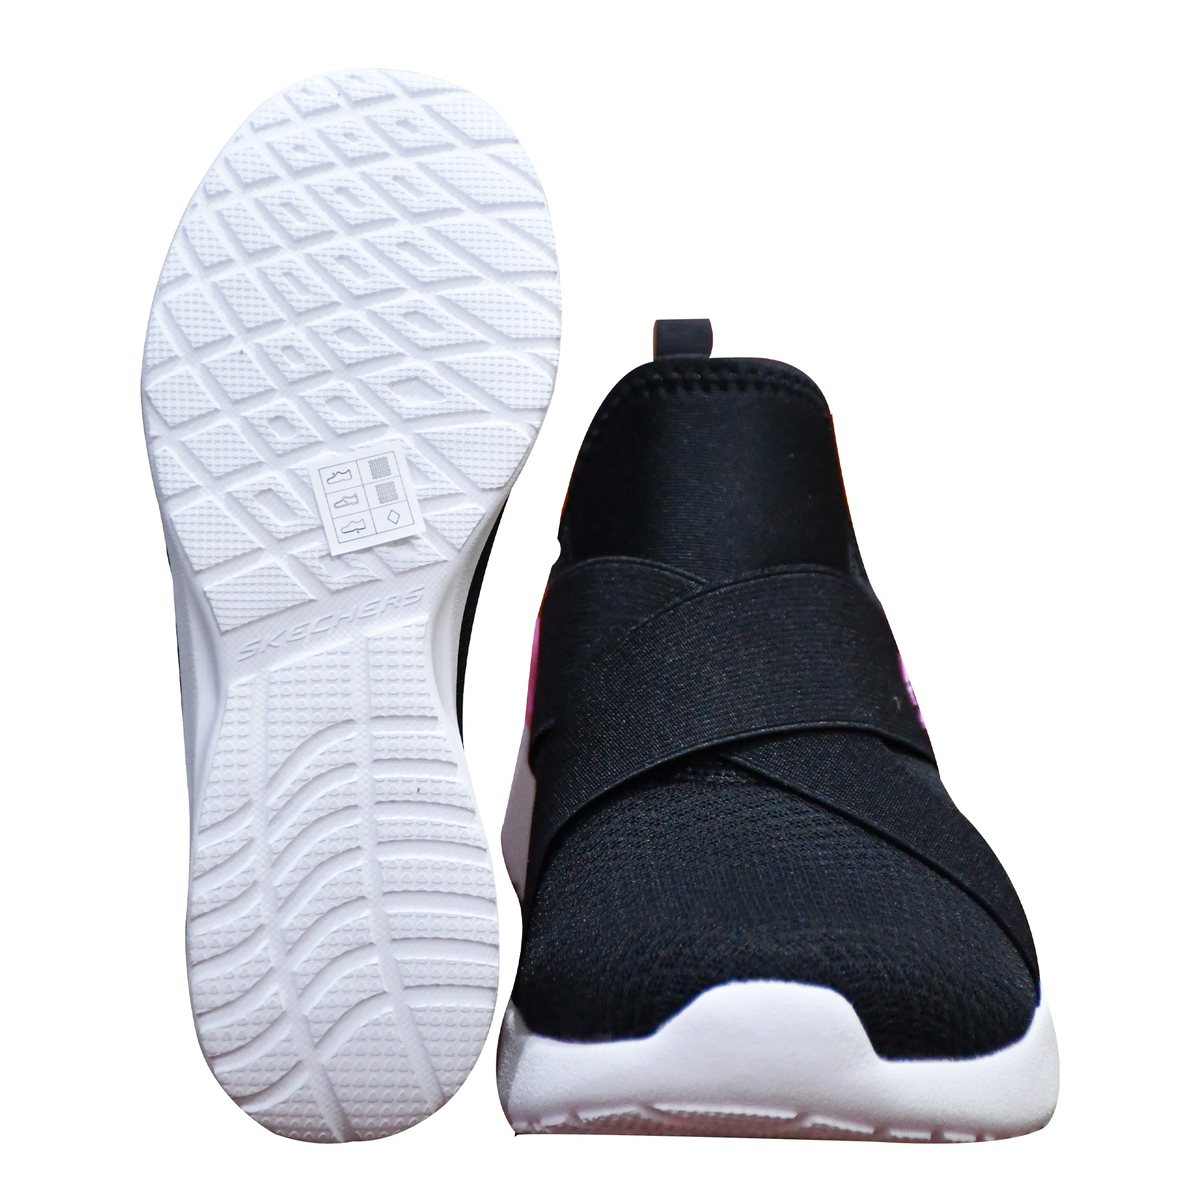 سكيتشرز حذاء رياضي نسائي 149341 أسود وأبيض، 39.5